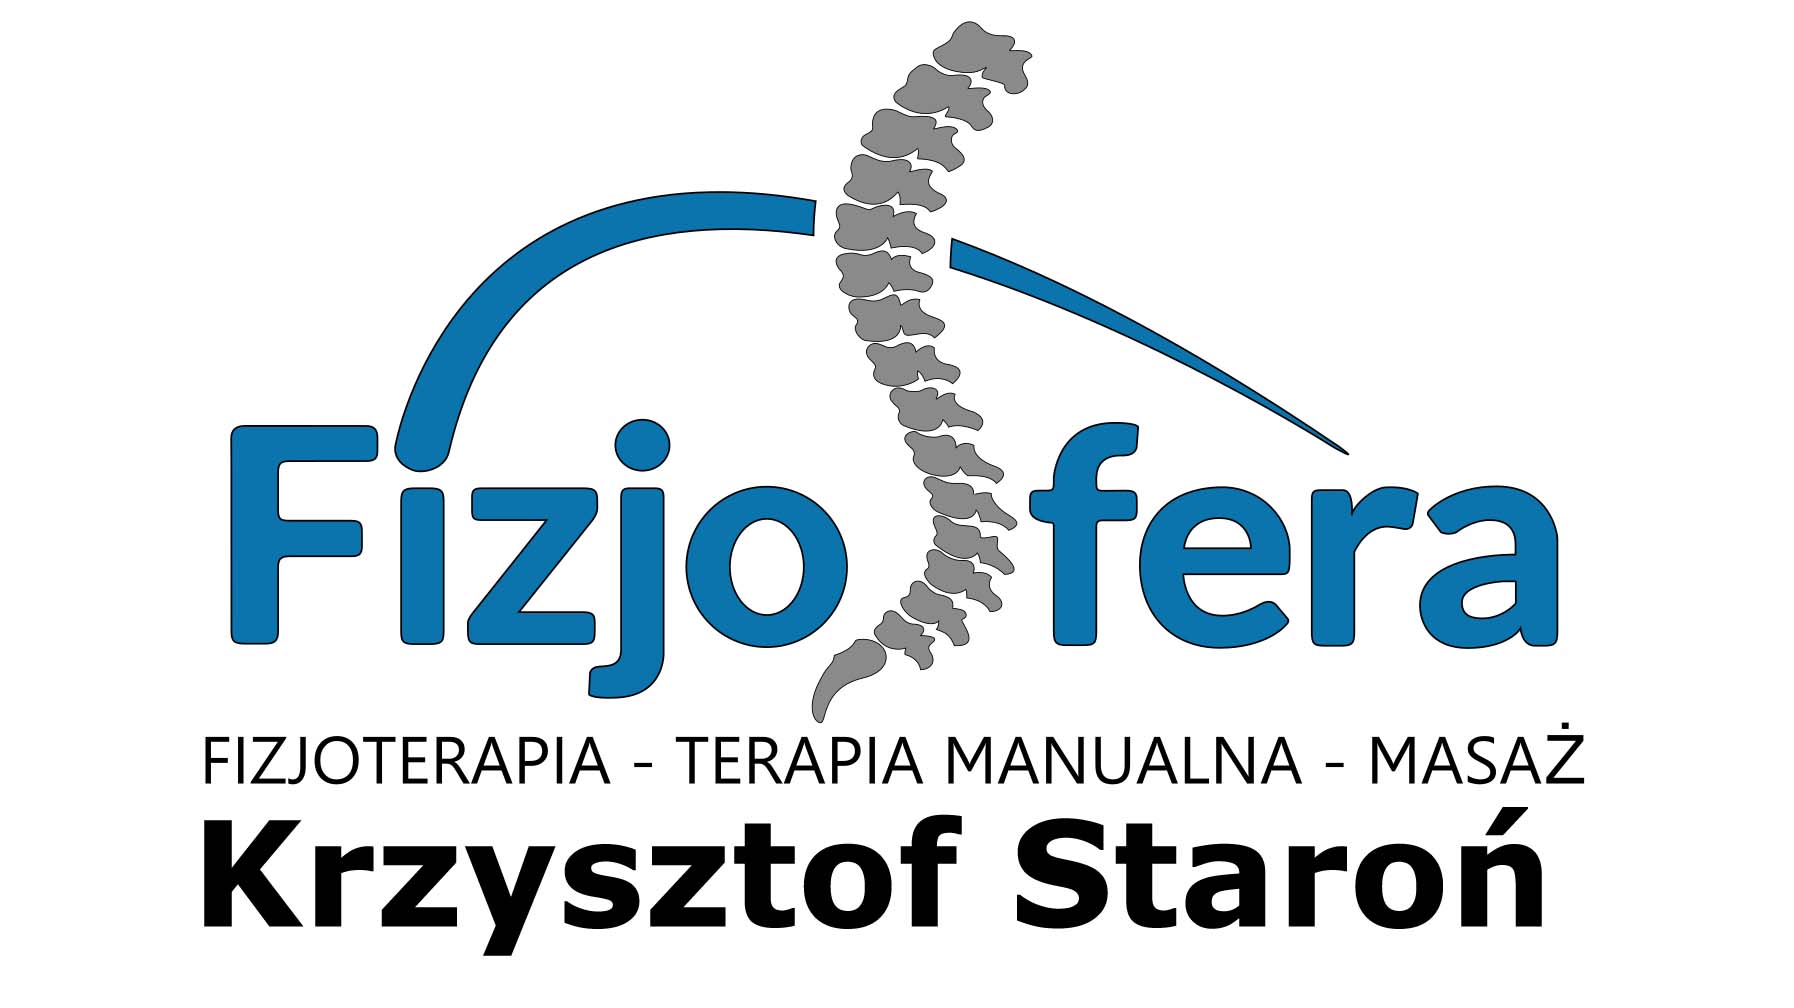 FIZJOSFERA – Krzysztof Staroń